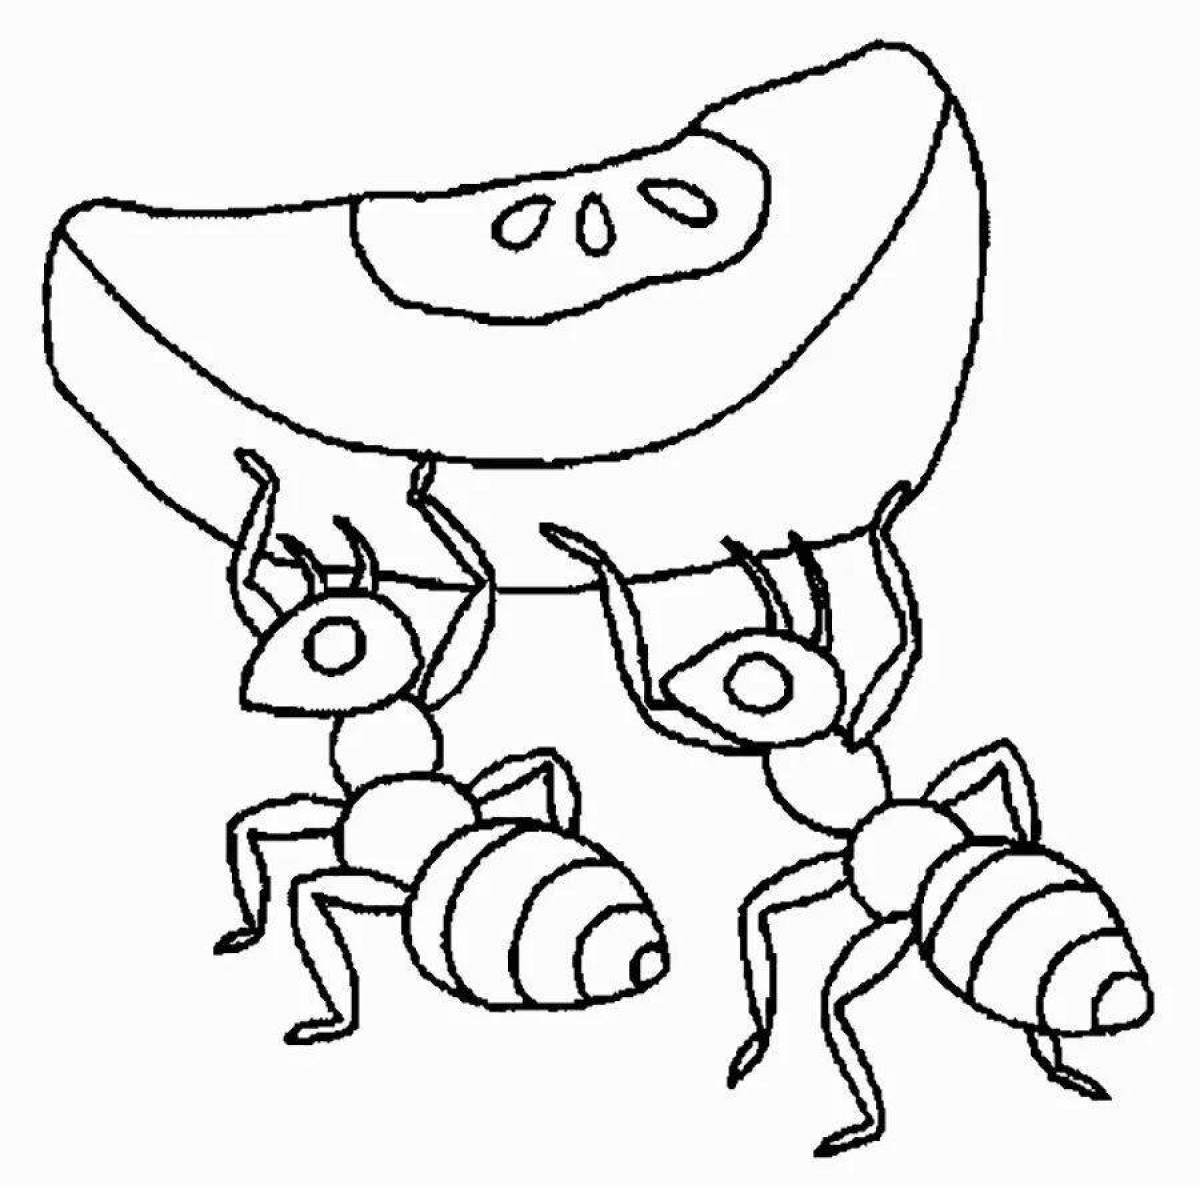 Живой рисунок муравья